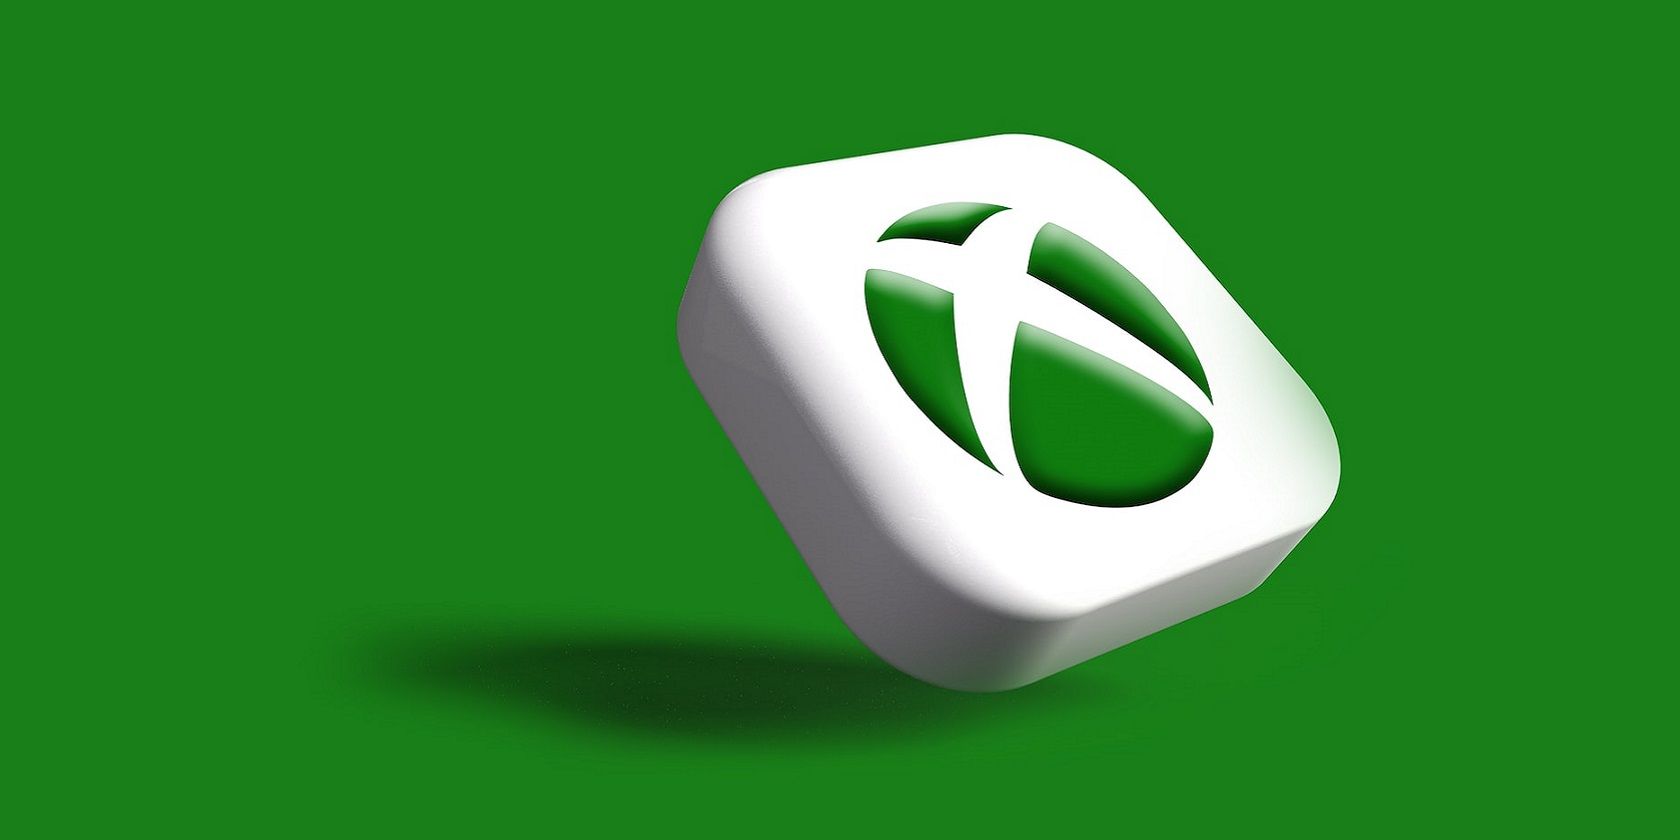 A 3D Xbox icon